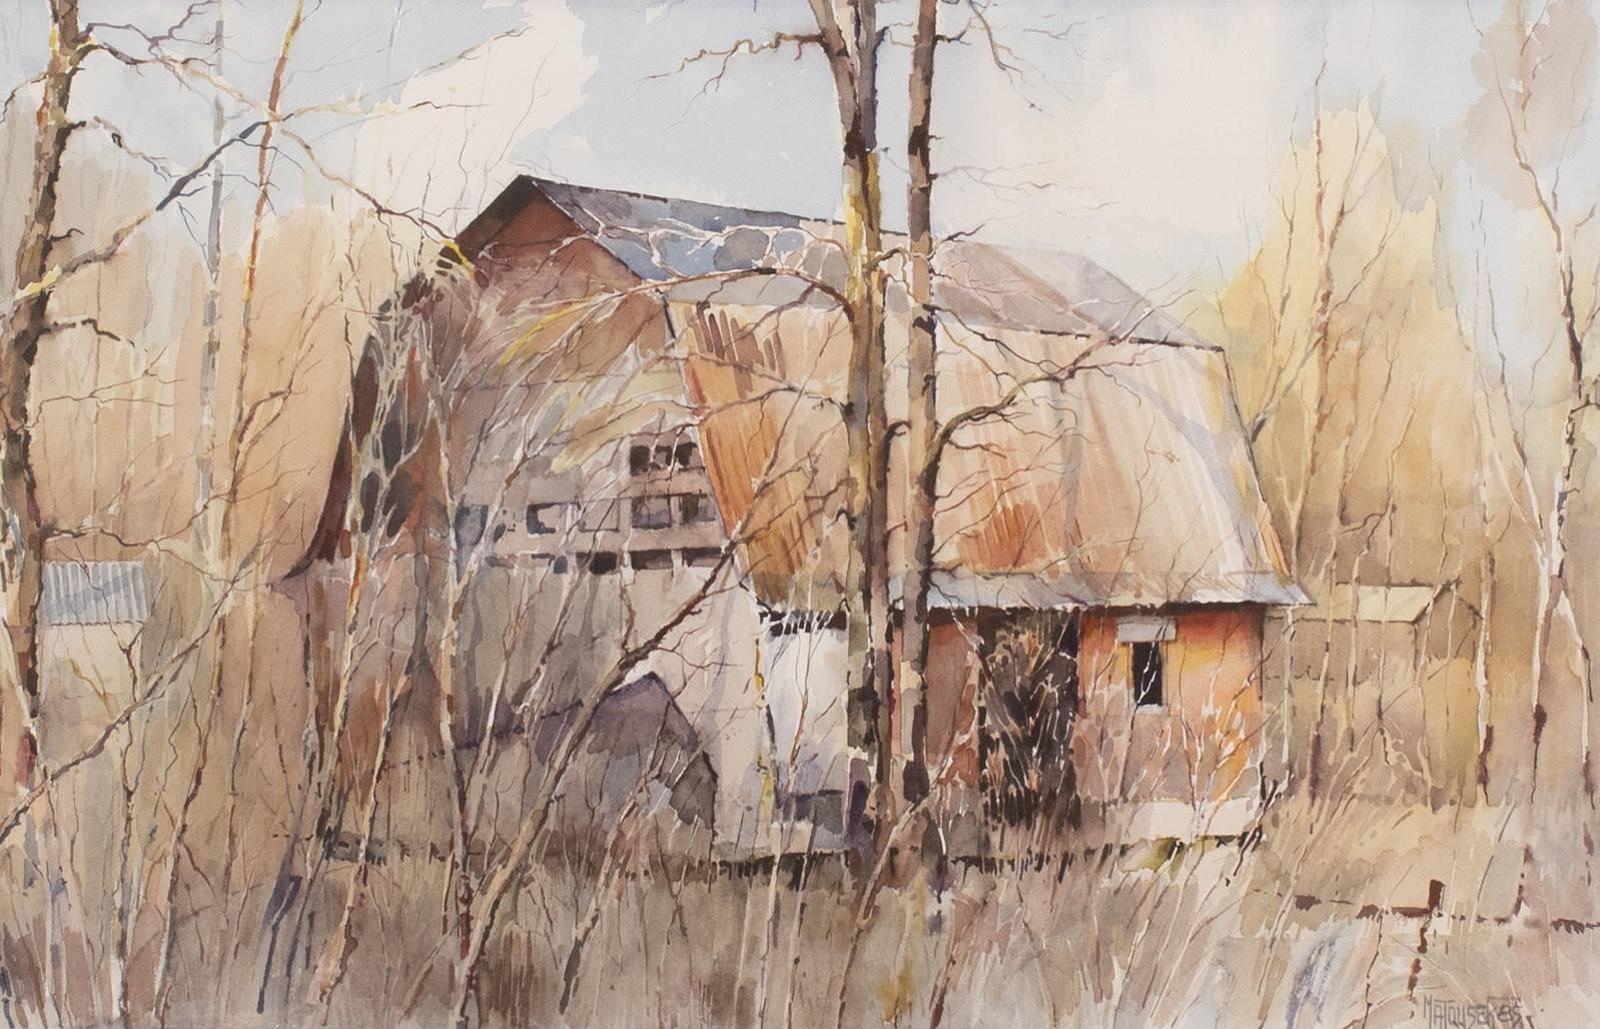 Vojtech (Voita) Matousek (1936-2015) - Autumn Barn; 1985